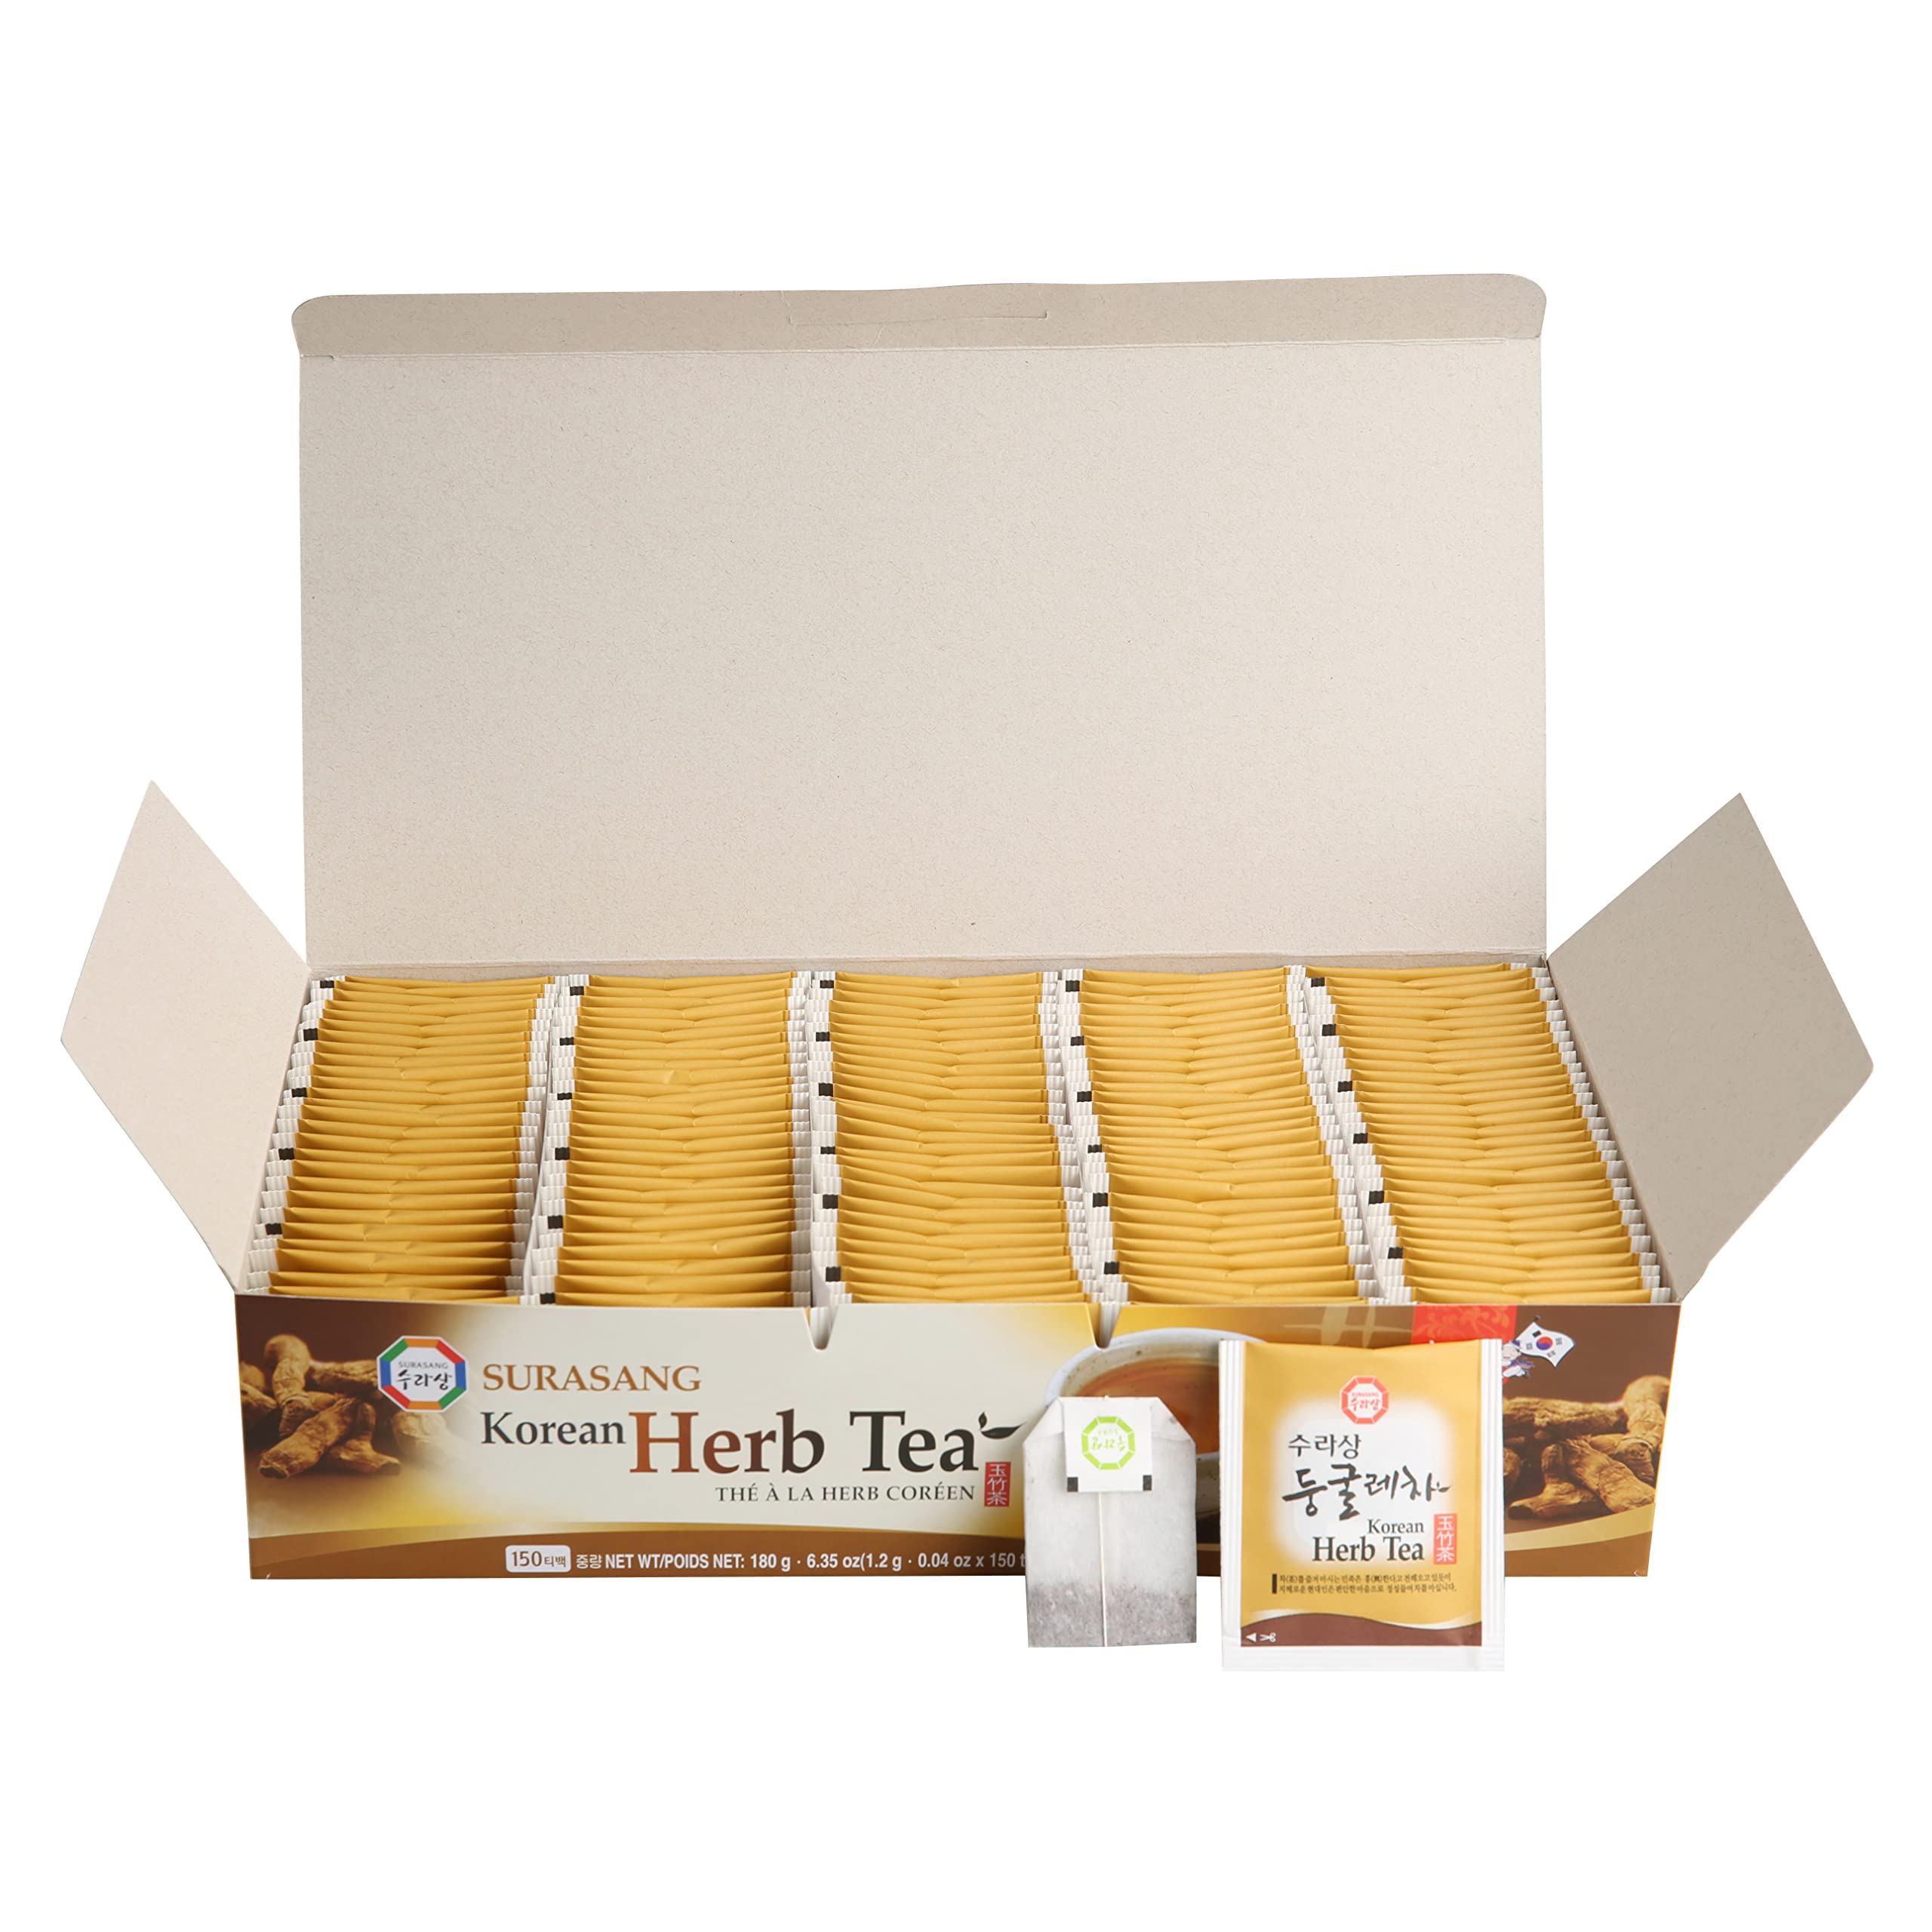 Surasang Korean Herb Tea - 150 Bags - 0